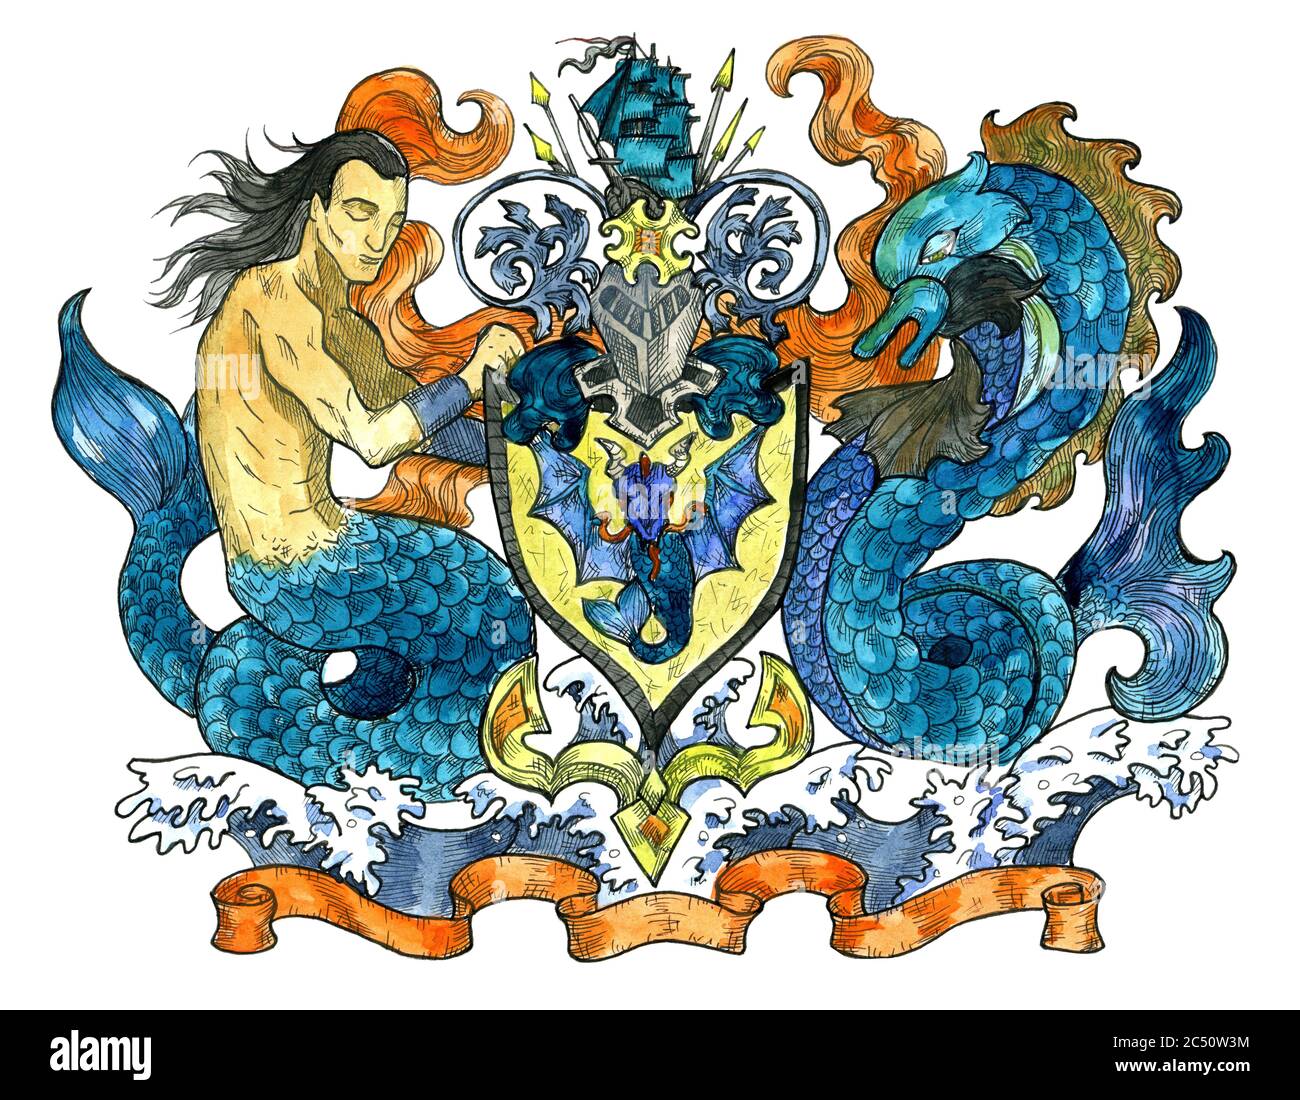 Emblème héraldique coloré avec sirène et dolphe isolés sur blanc. Illustration gravée colorée avec des créatures mythologiques et fantasques dans un style ancien, Banque D'Images